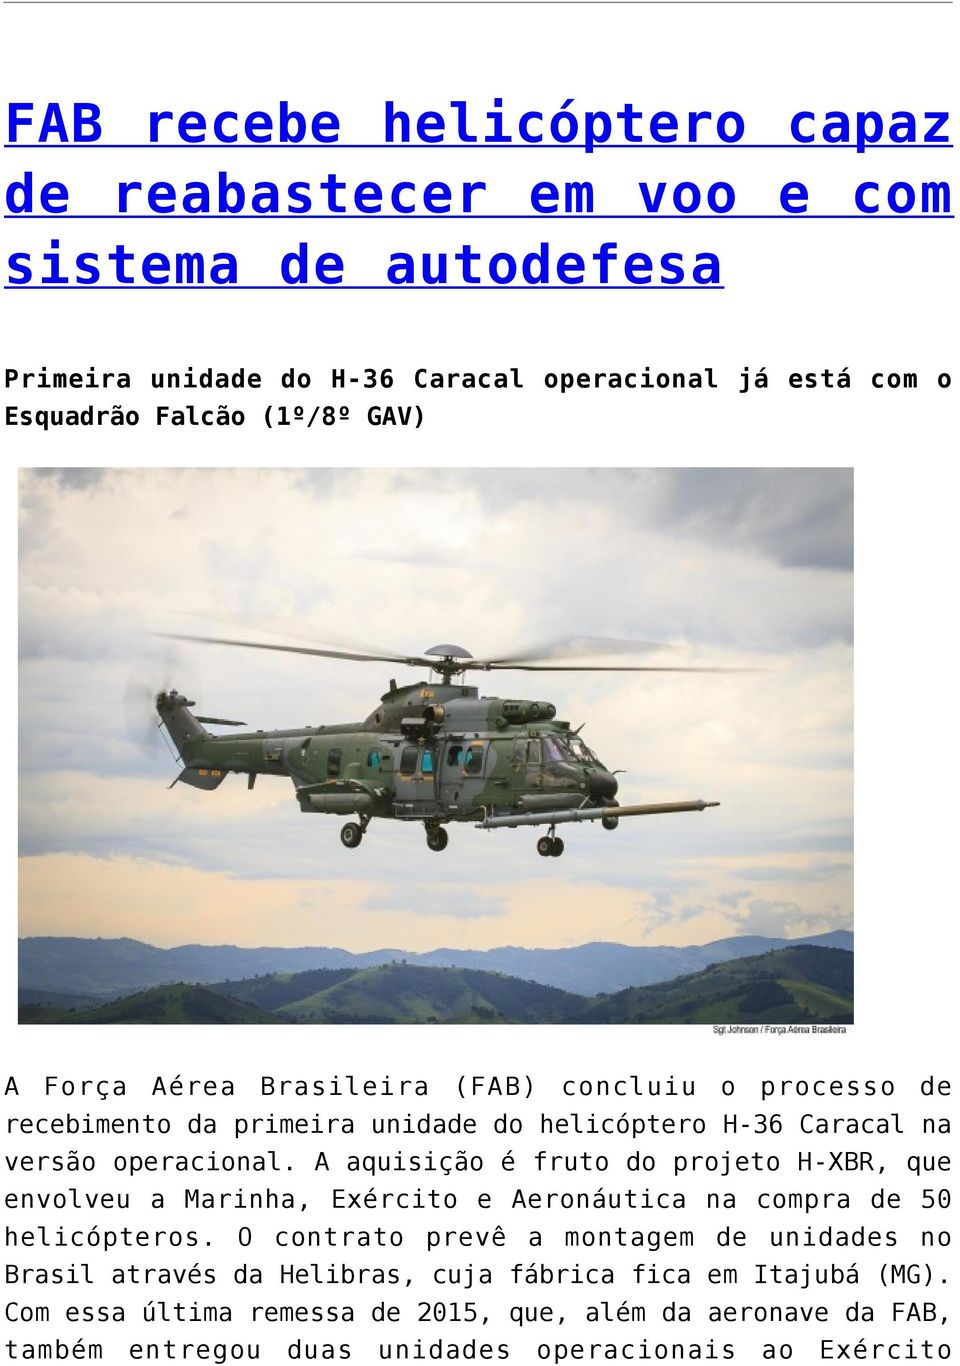 A aquisição é fruto do projeto H-XBR, que envolveu a Marinha, Exército e Aeronáutica na compra de 50 helicópteros.